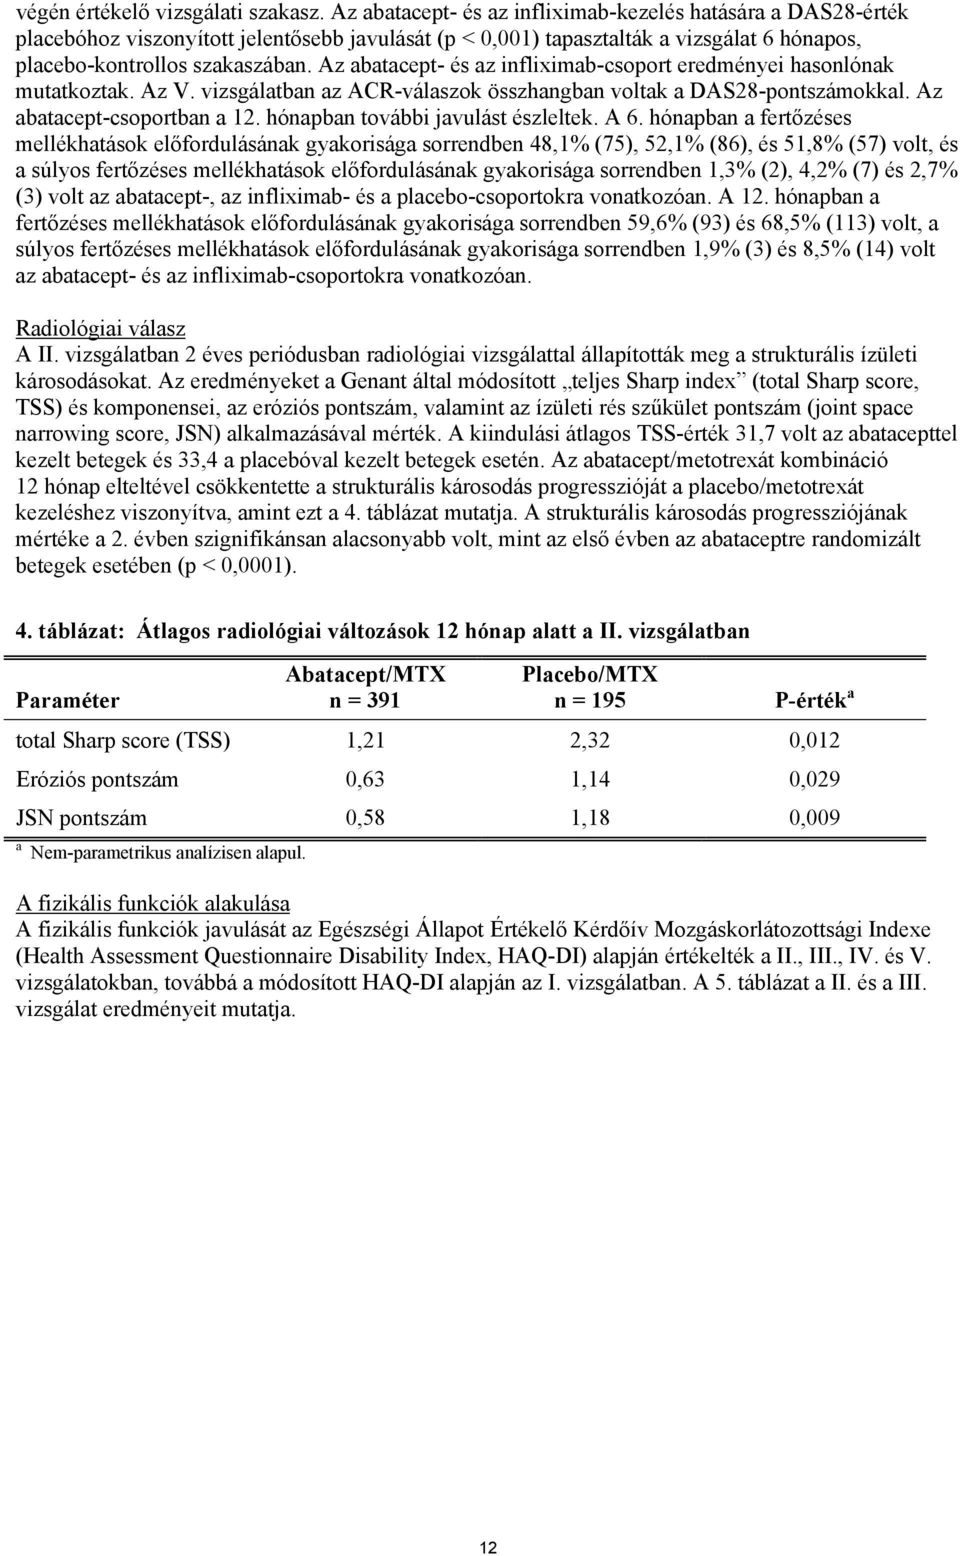 Az abatacept- és az infliximab-csoport eredményei hasonlónak mutatkoztak. Az V. vizsgálatban az ACR-válaszok összhangban voltak a DAS28-pontszámokkal. Az abatacept-csoportban a 12.